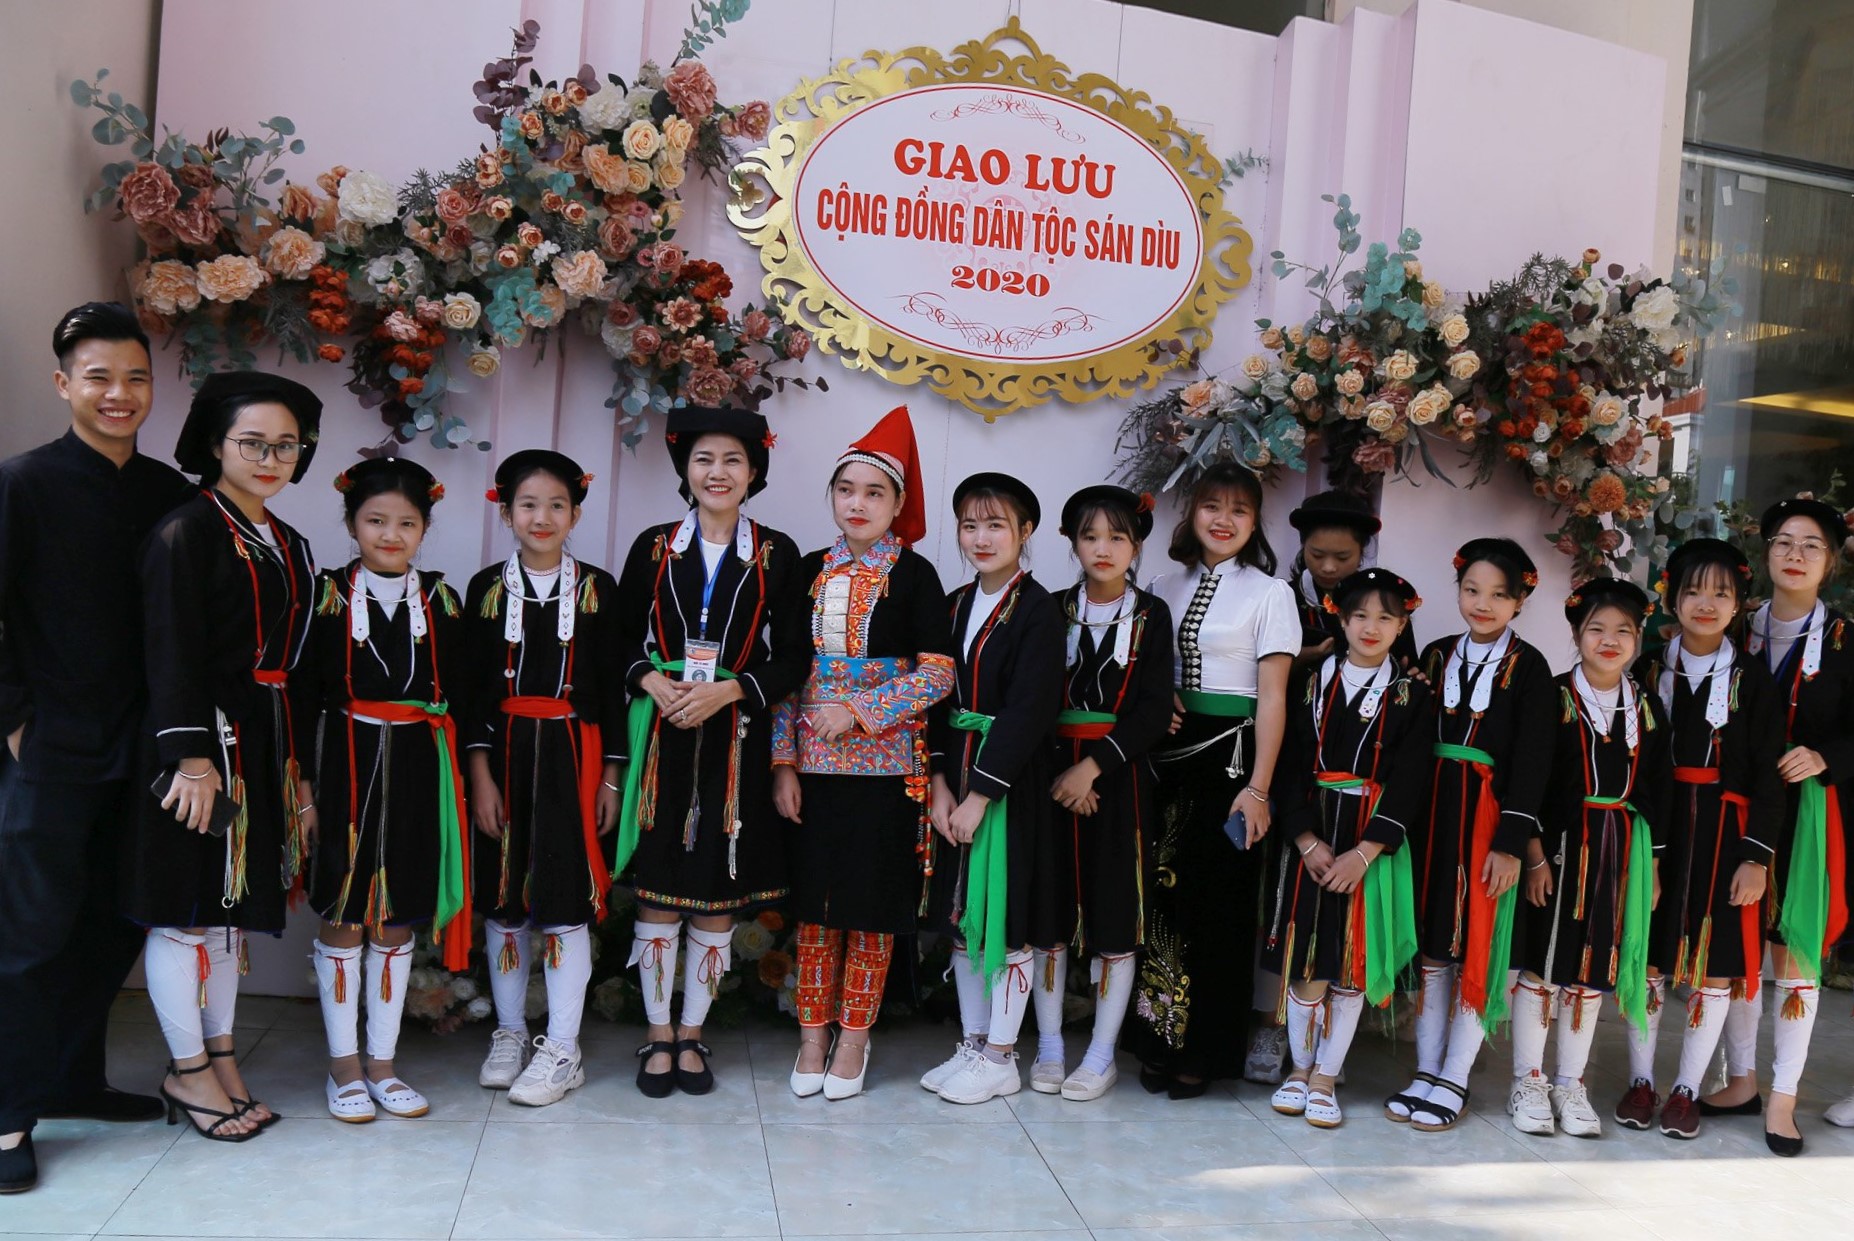 Các bạn trẻ dân tộc Sán Dìu chụp ảnh lưu niệm cùng thanh niên các dân tộc Thái, Mông, Dao tại buổi giao lưu. Ảnh: Thái Sinh Trần, Khổng Yến Anh.